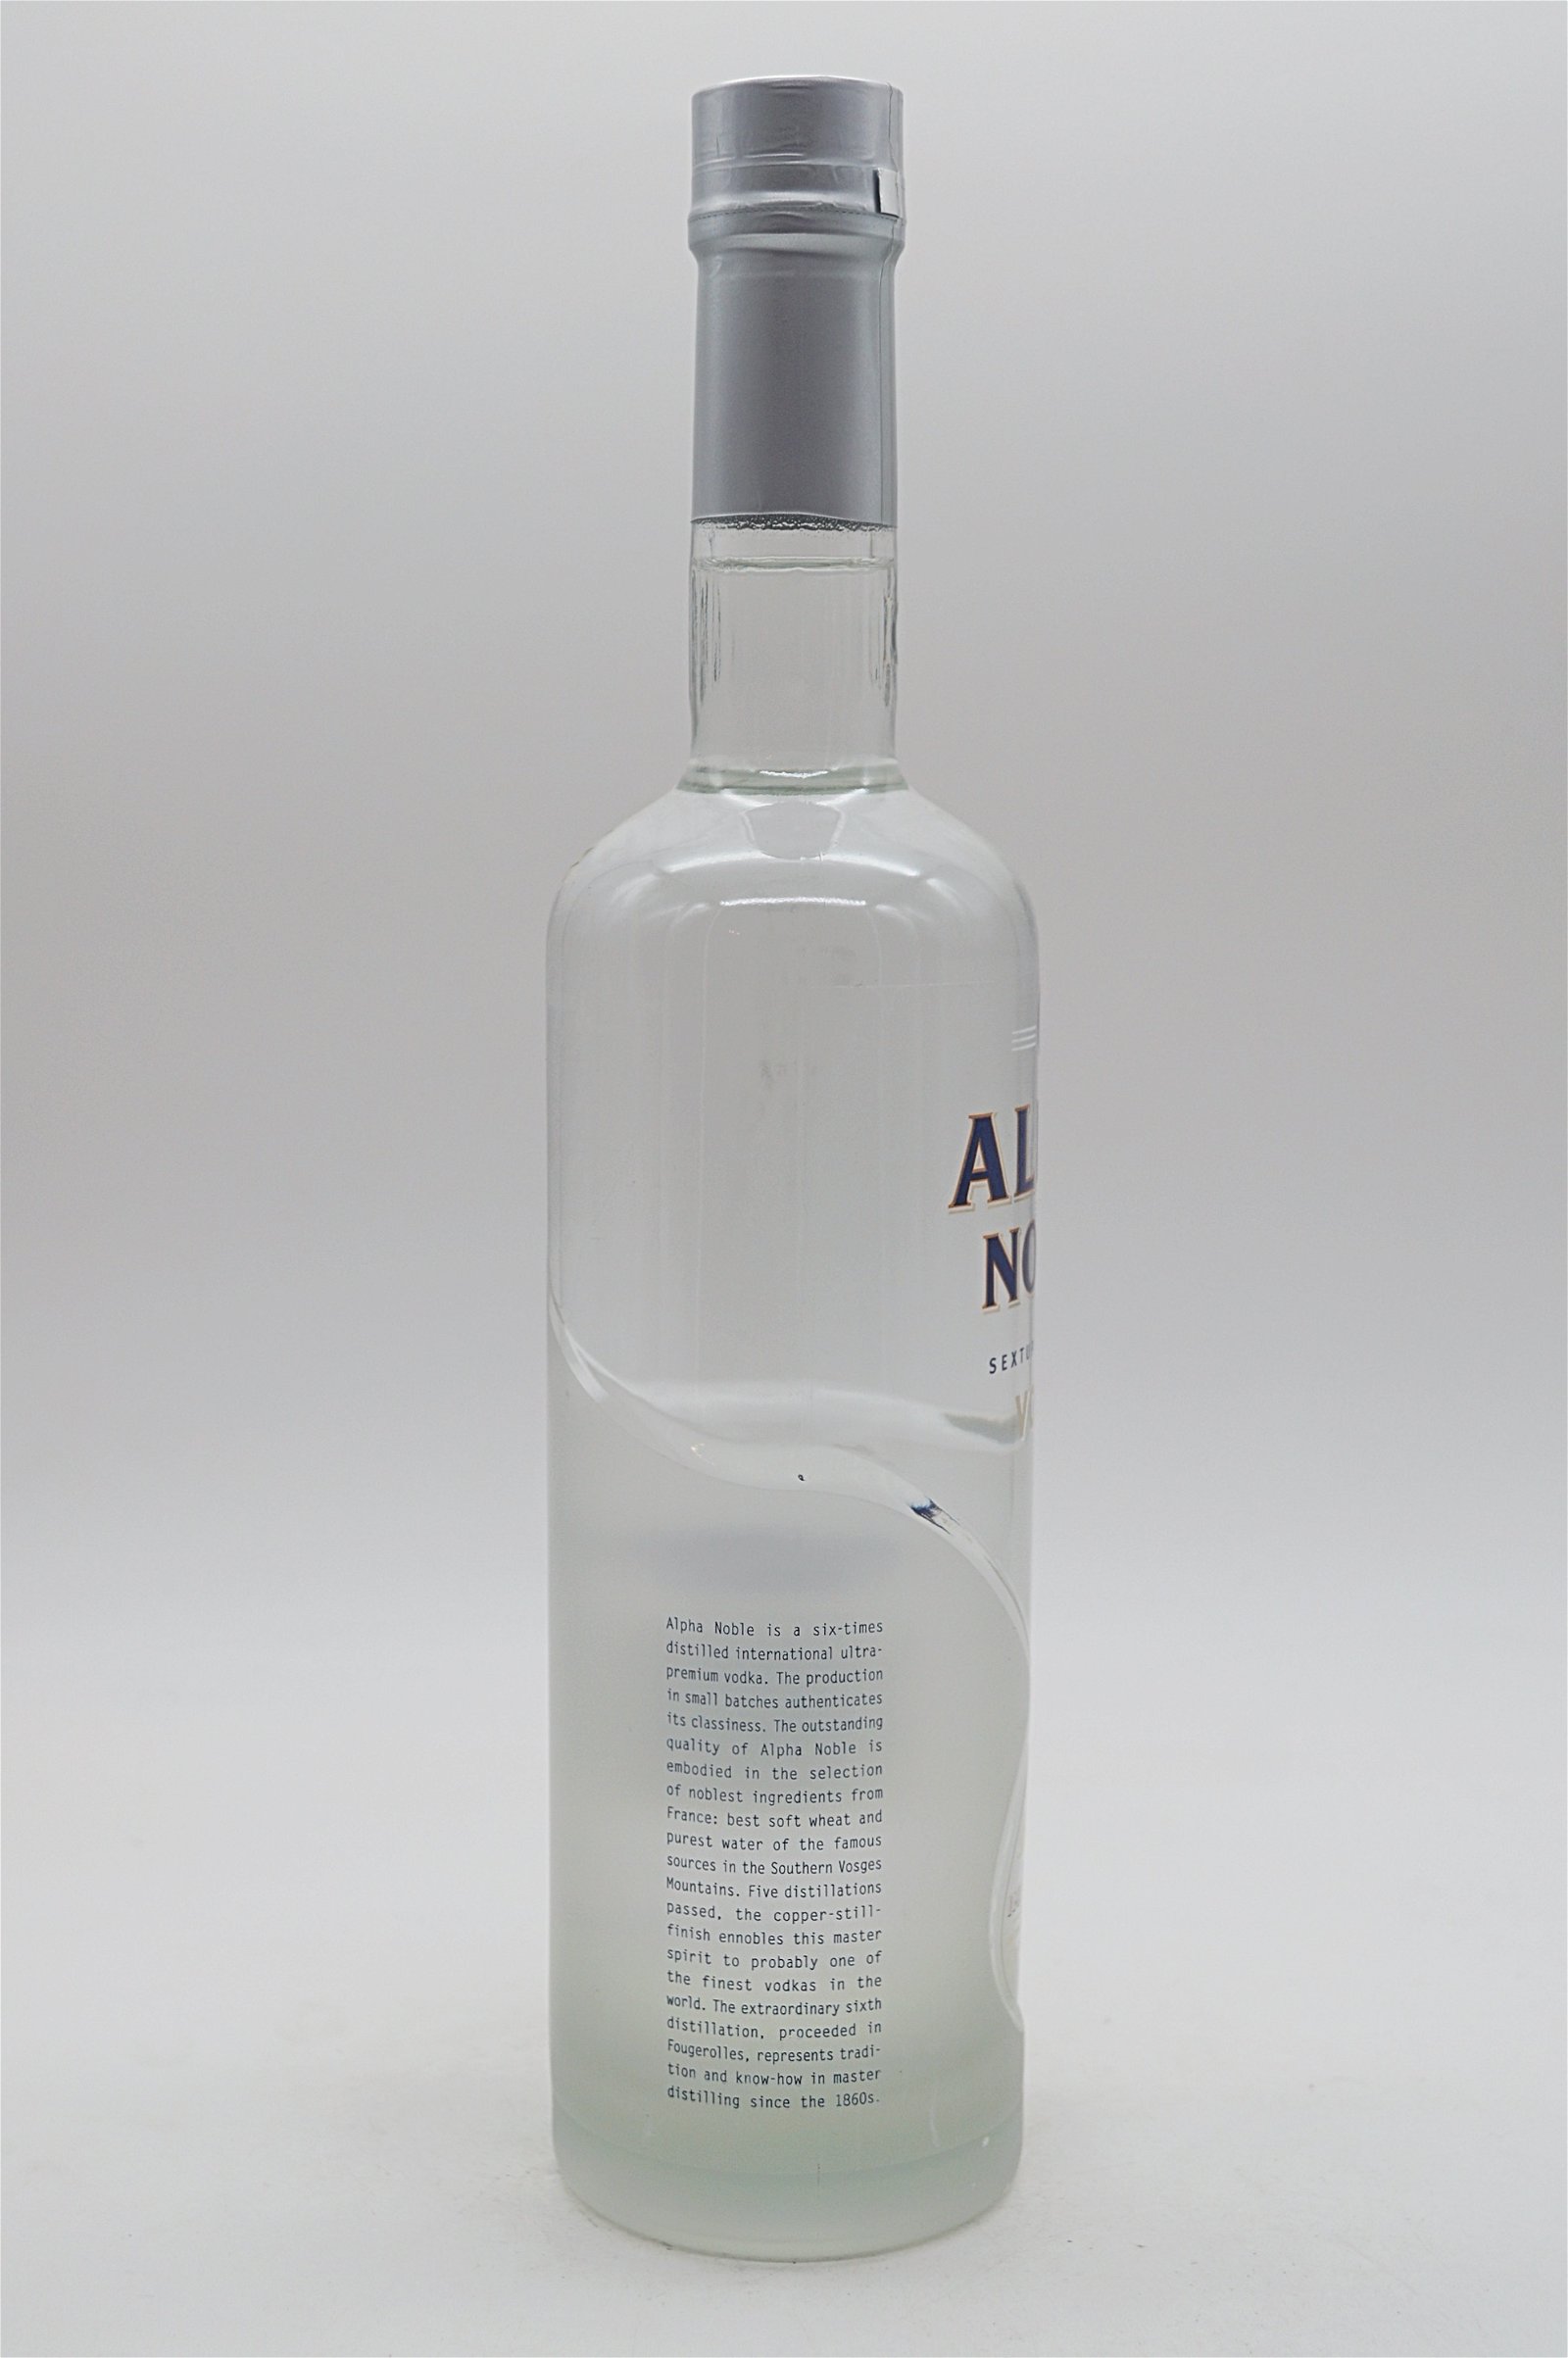 Alpha Noble Vodka 